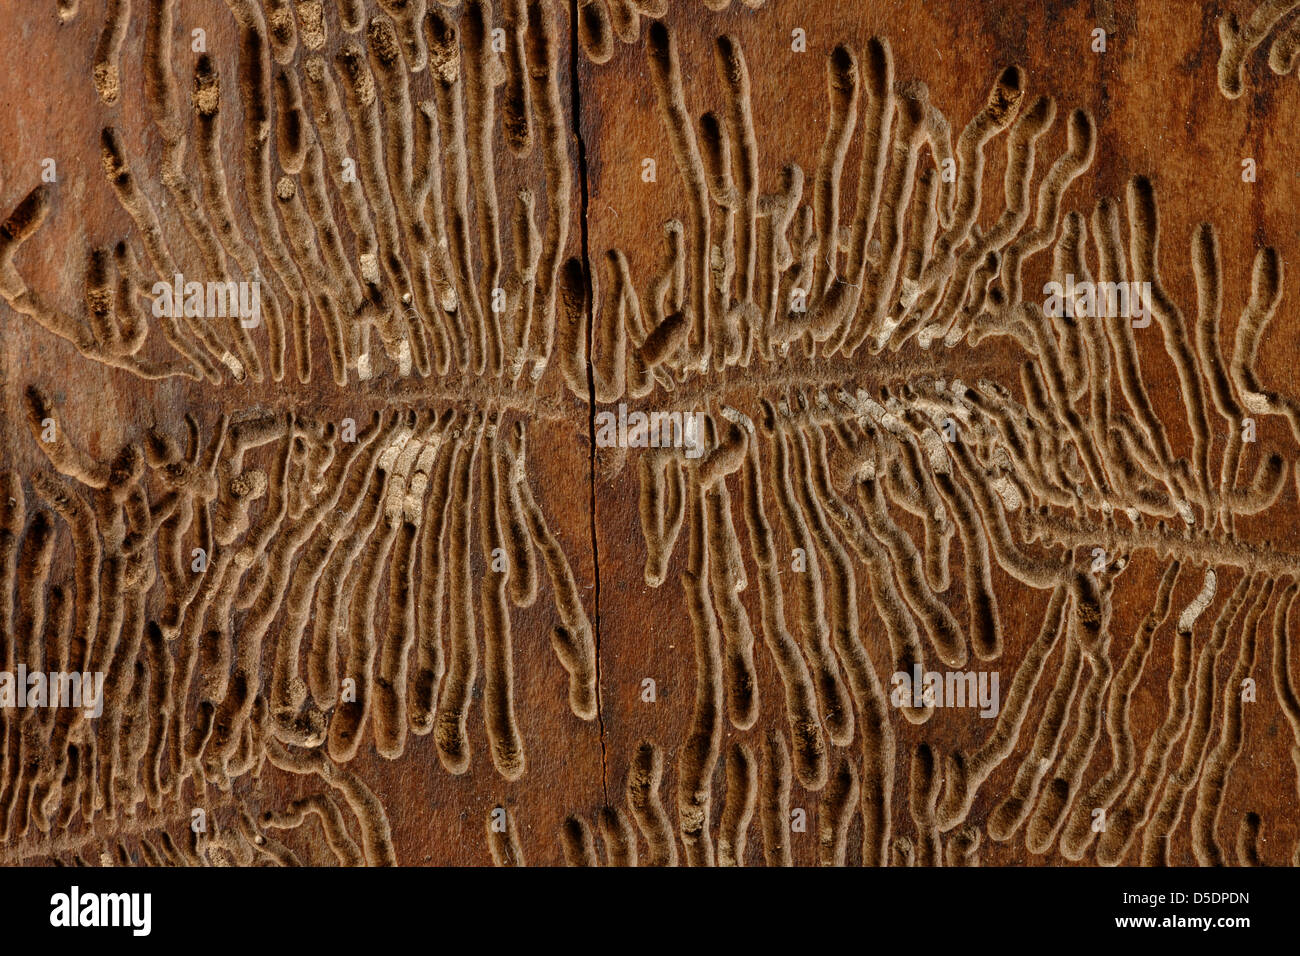 Bark beetle tracks on felled tree trunk, UK Stock Photo